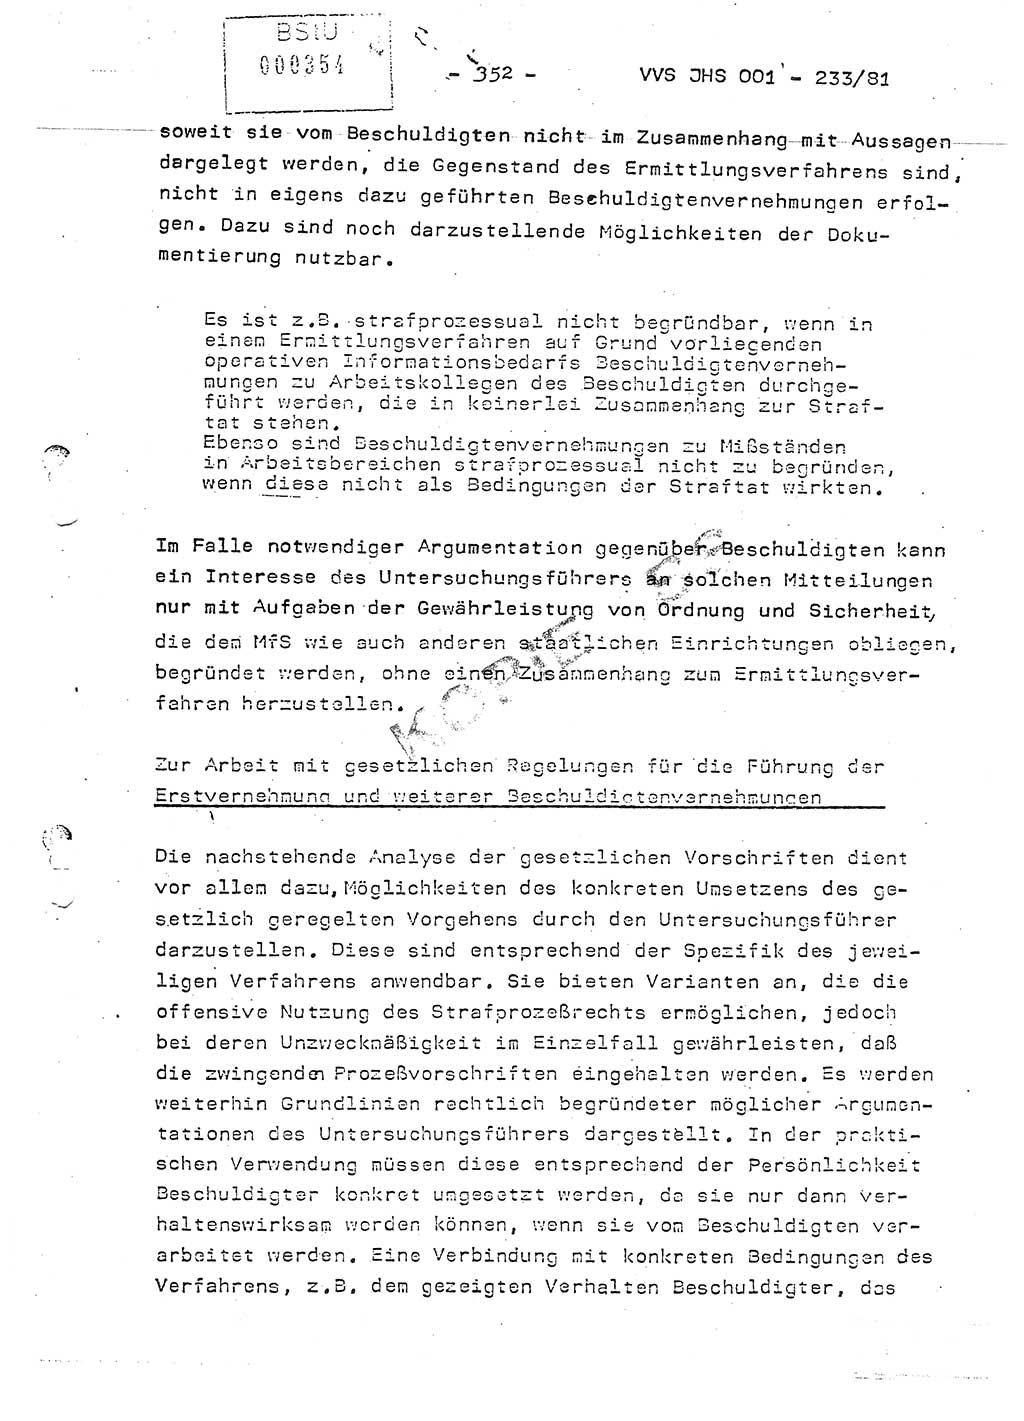 Dissertation Oberstleutnant Horst Zank (JHS), Oberstleutnant Dr. Karl-Heinz Knoblauch (JHS), Oberstleutnant Gustav-Adolf Kowalewski (HA Ⅸ), Oberstleutnant Wolfgang Plötner (HA Ⅸ), Ministerium für Staatssicherheit (MfS) [Deutsche Demokratische Republik (DDR)], Juristische Hochschule (JHS), Vertrauliche Verschlußsache (VVS) o001-233/81, Potsdam 1981, Blatt 352 (Diss. MfS DDR JHS VVS o001-233/81 1981, Bl. 352)